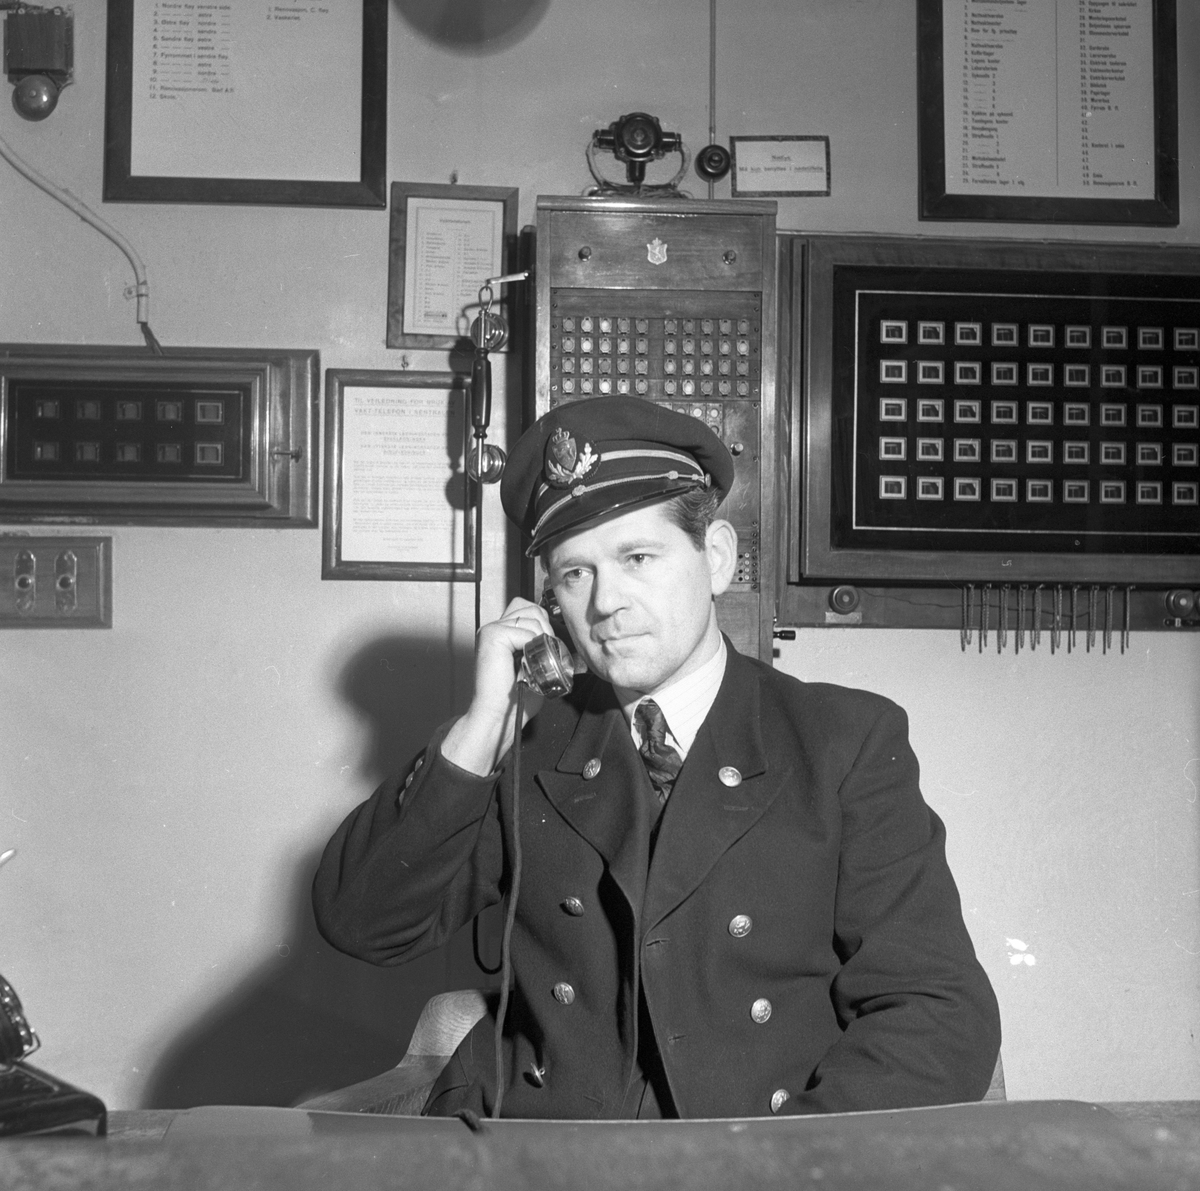 Mann i uniform snakker i telefon på kontor.
Fotografert 1951.